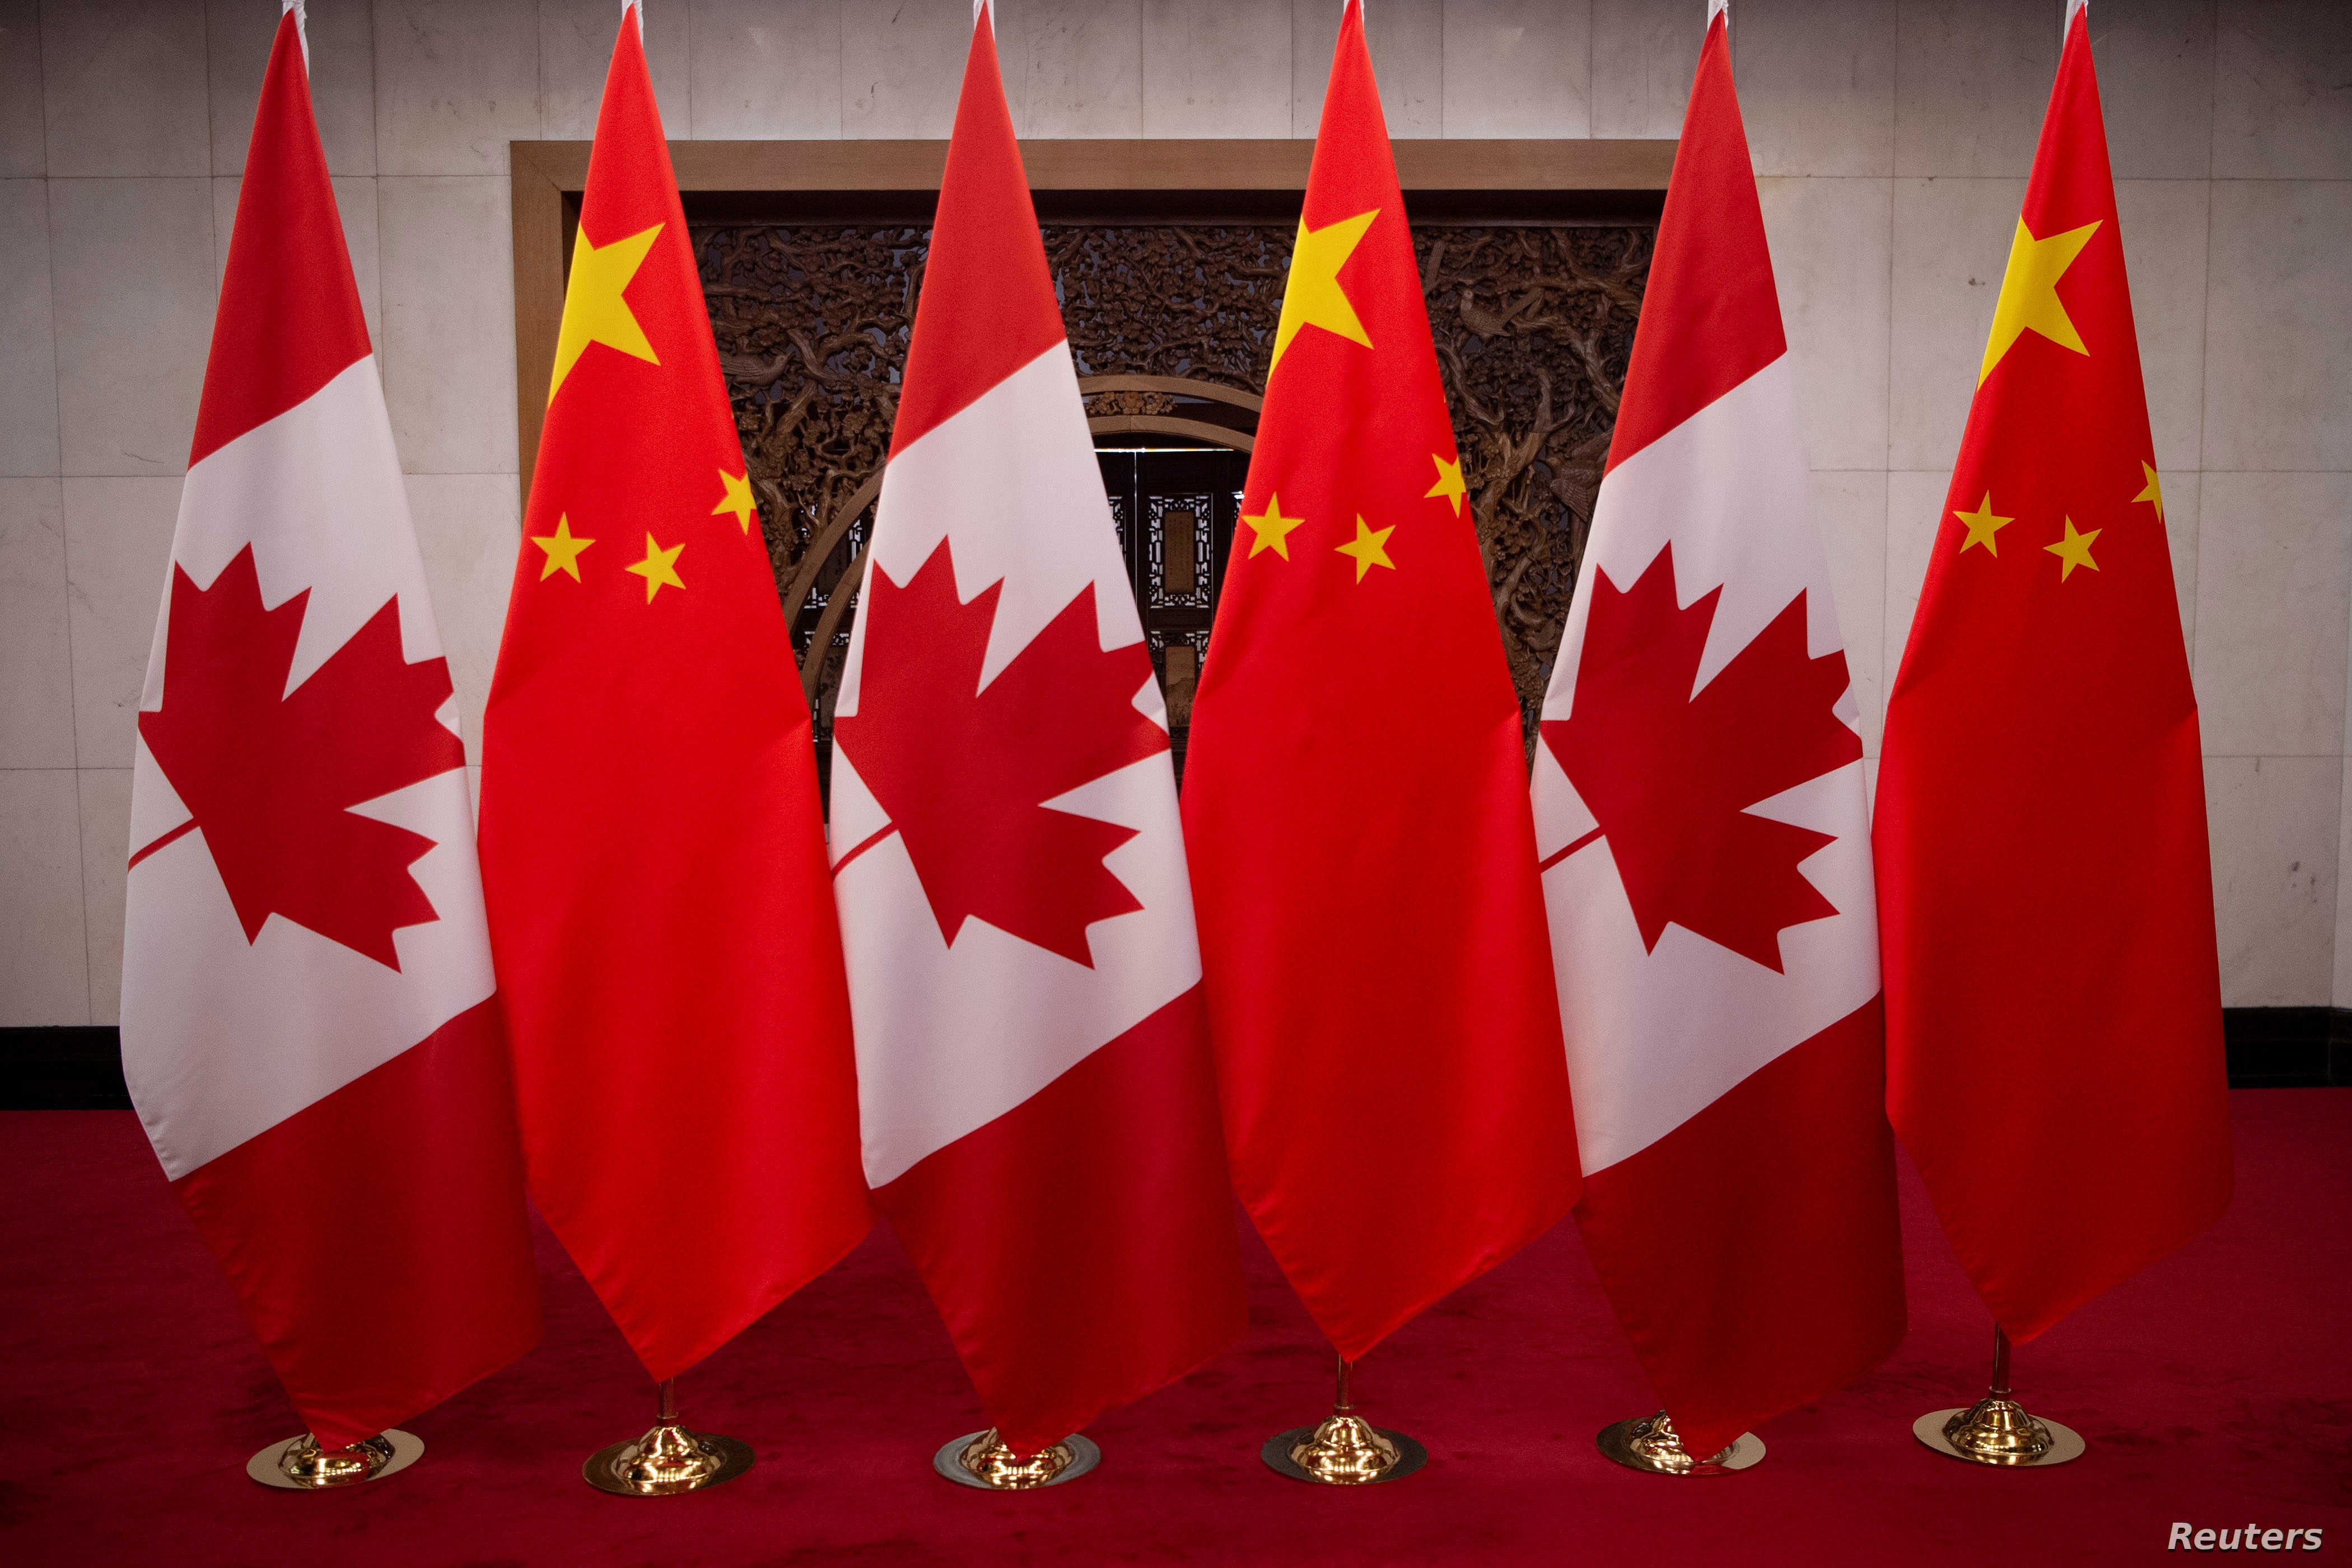 عين كندا الاقتصادية على الصين .. ماذا عن الاستراتيجية الجديدة لمنطقة آسيا والمحيط الهادئ؟